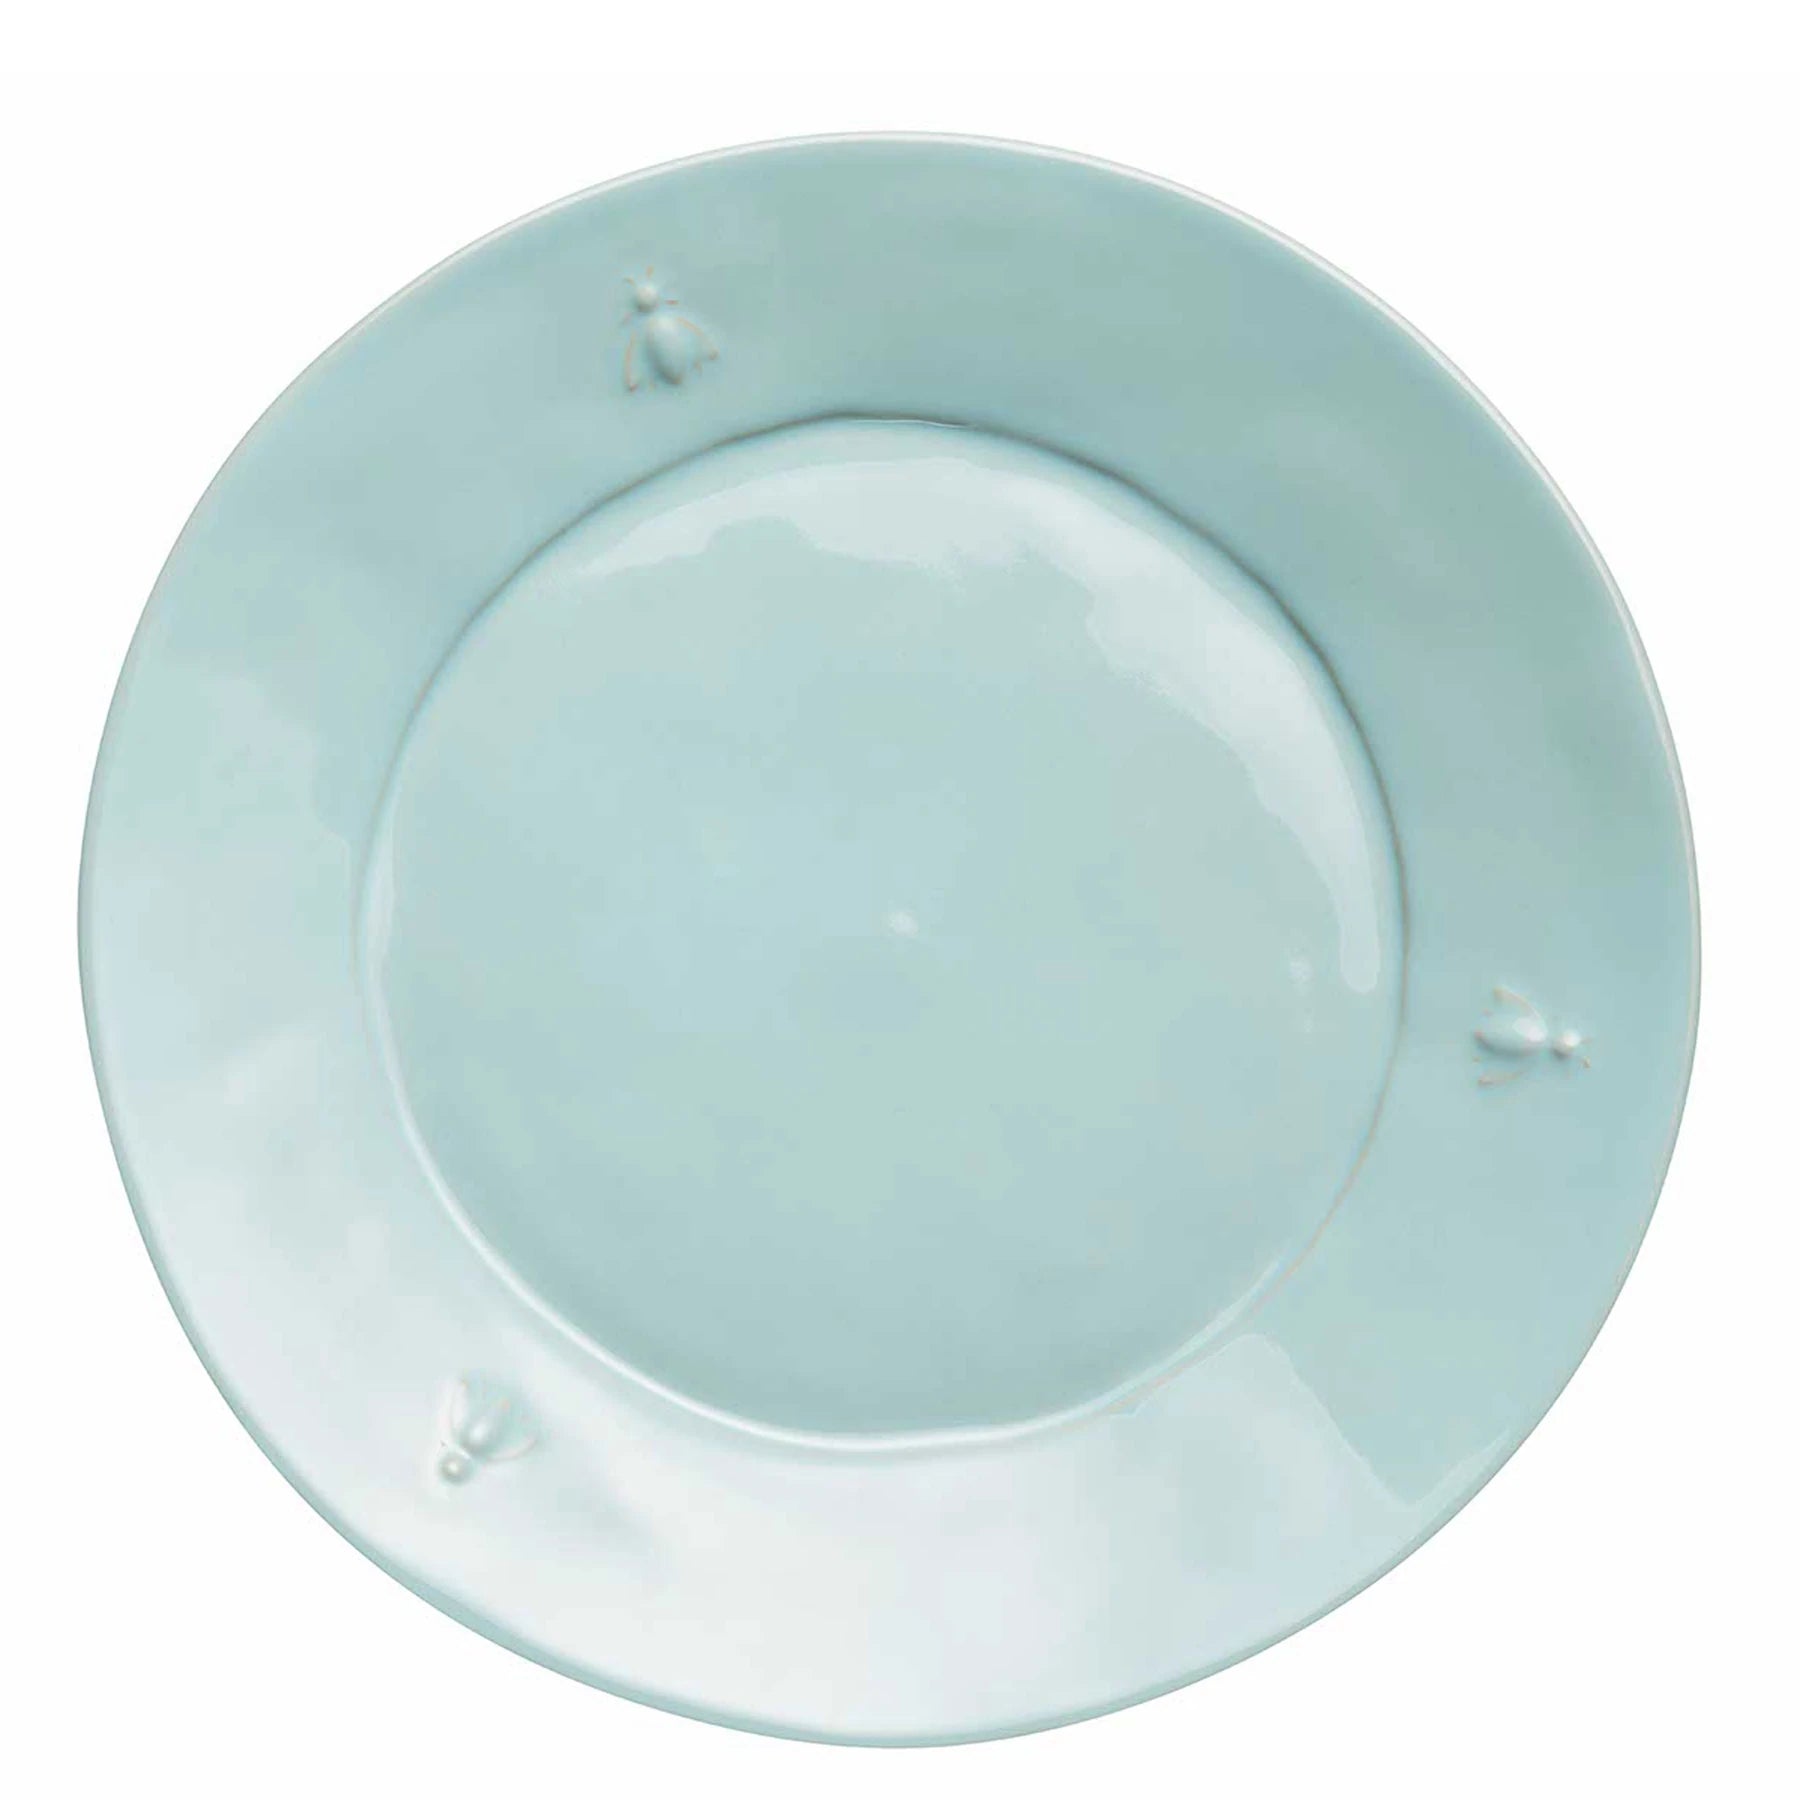 La Rochere Abeilles Ceramic Dinner Plate - Pastel Blue